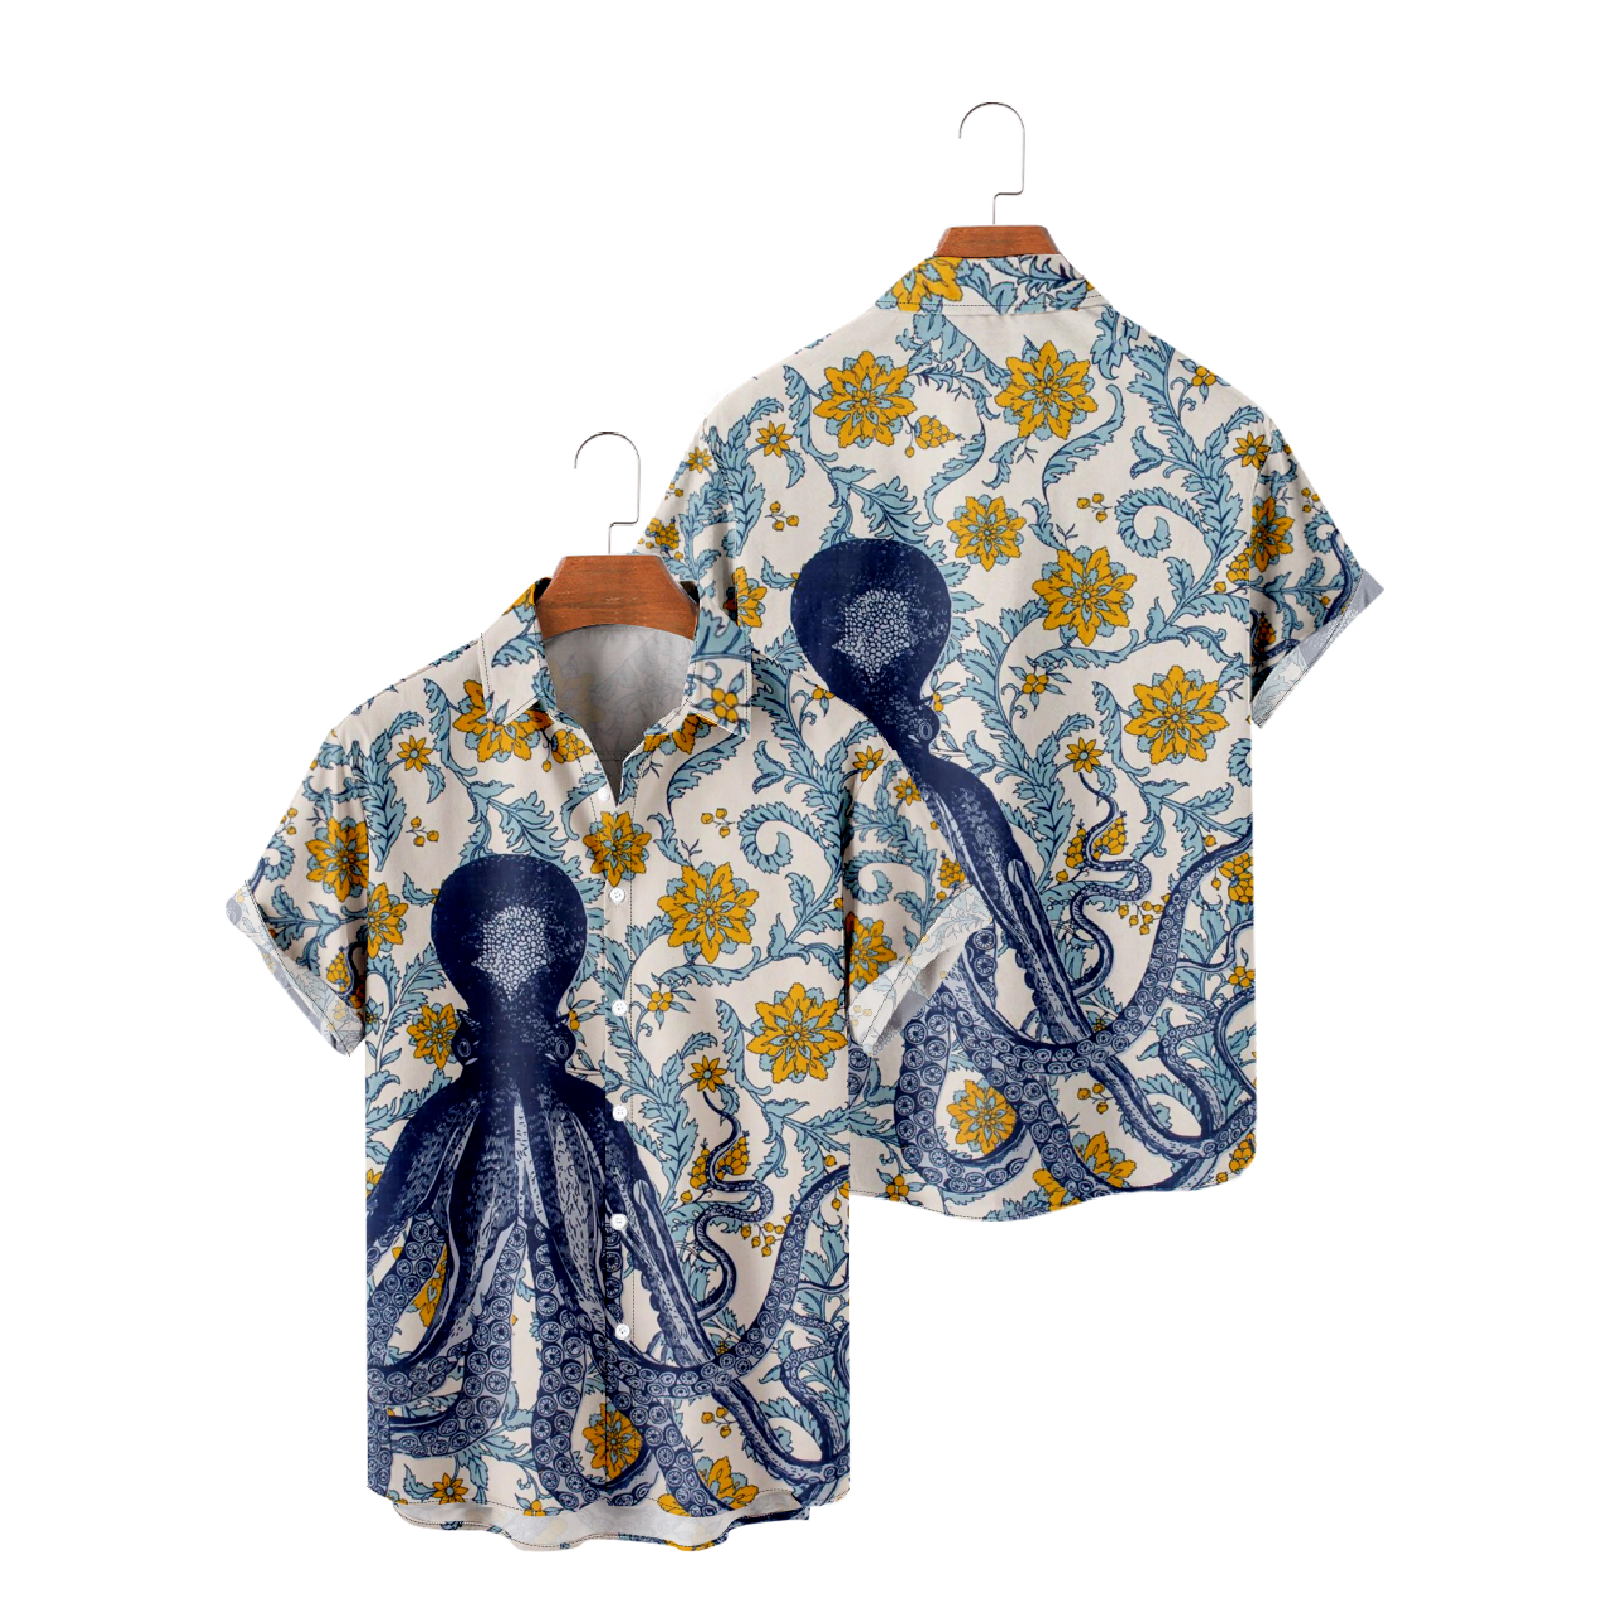 Octopus and Flower Print Hawaiian Shirt Button Up Short Sleeve Summer Tops uhoodie 